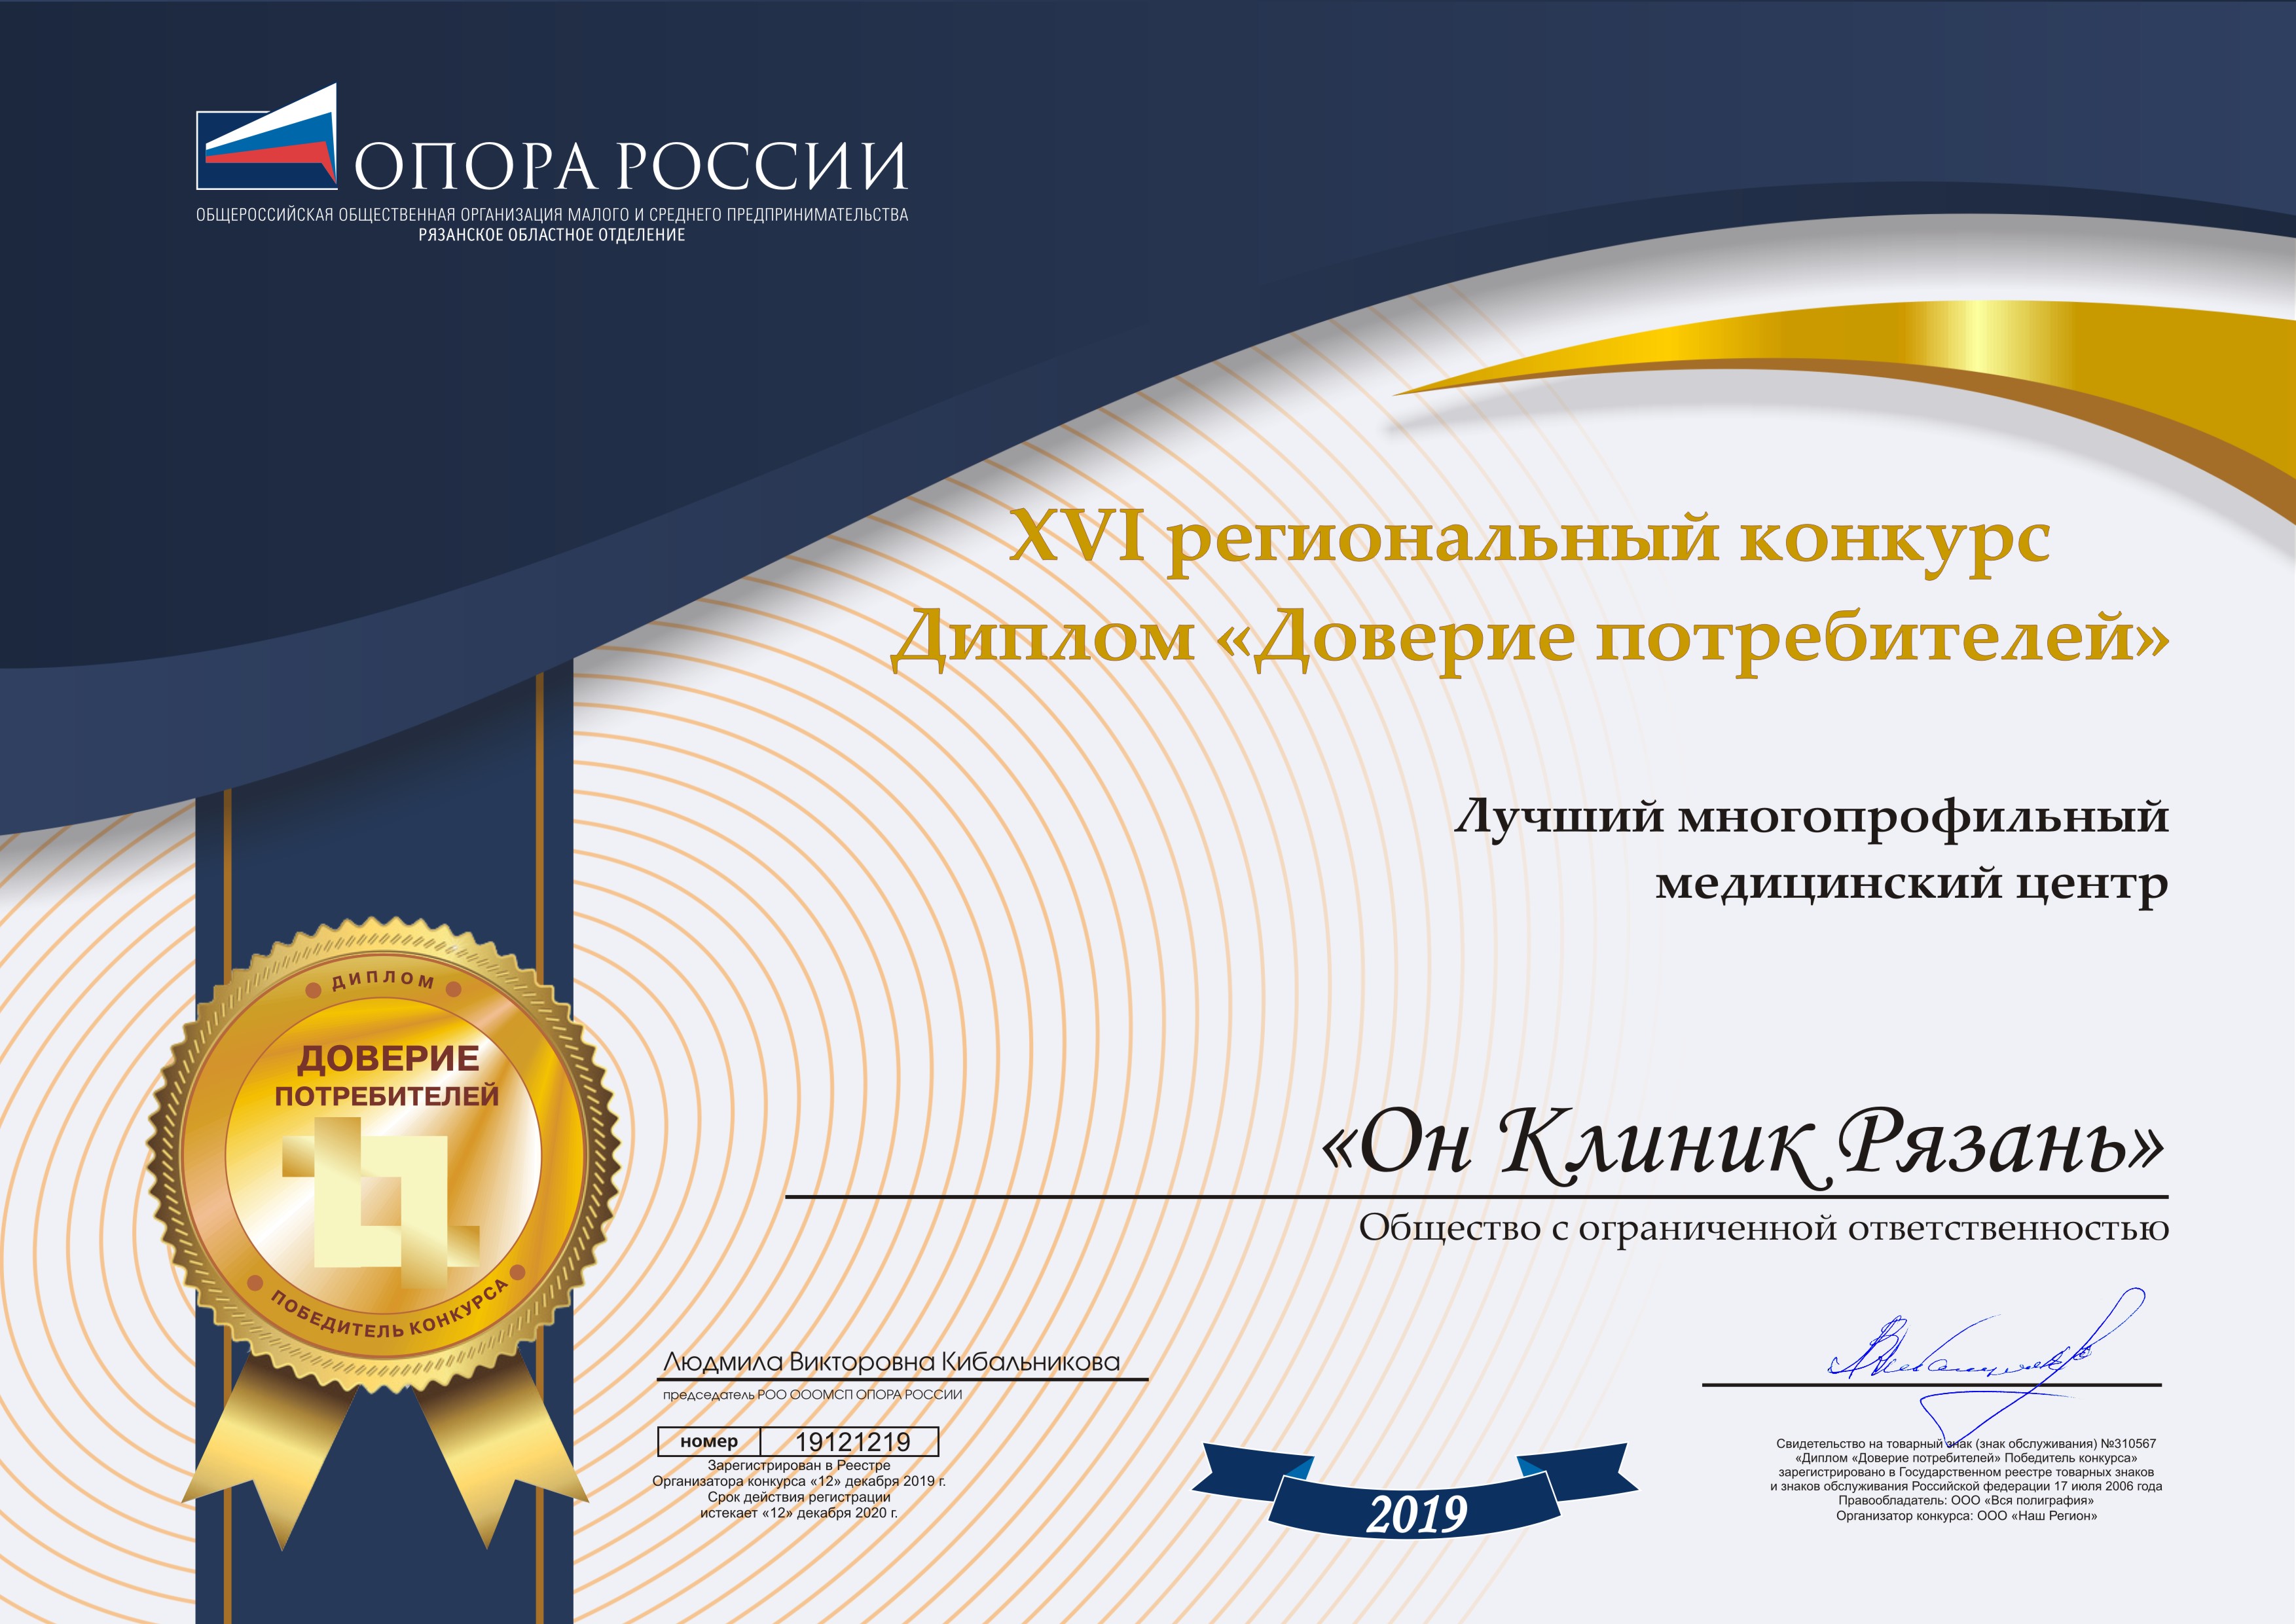 Международный медицинский центр Он Клиник в Рязани стал победителем ежегодного конкурса «Доверие потребителей» 